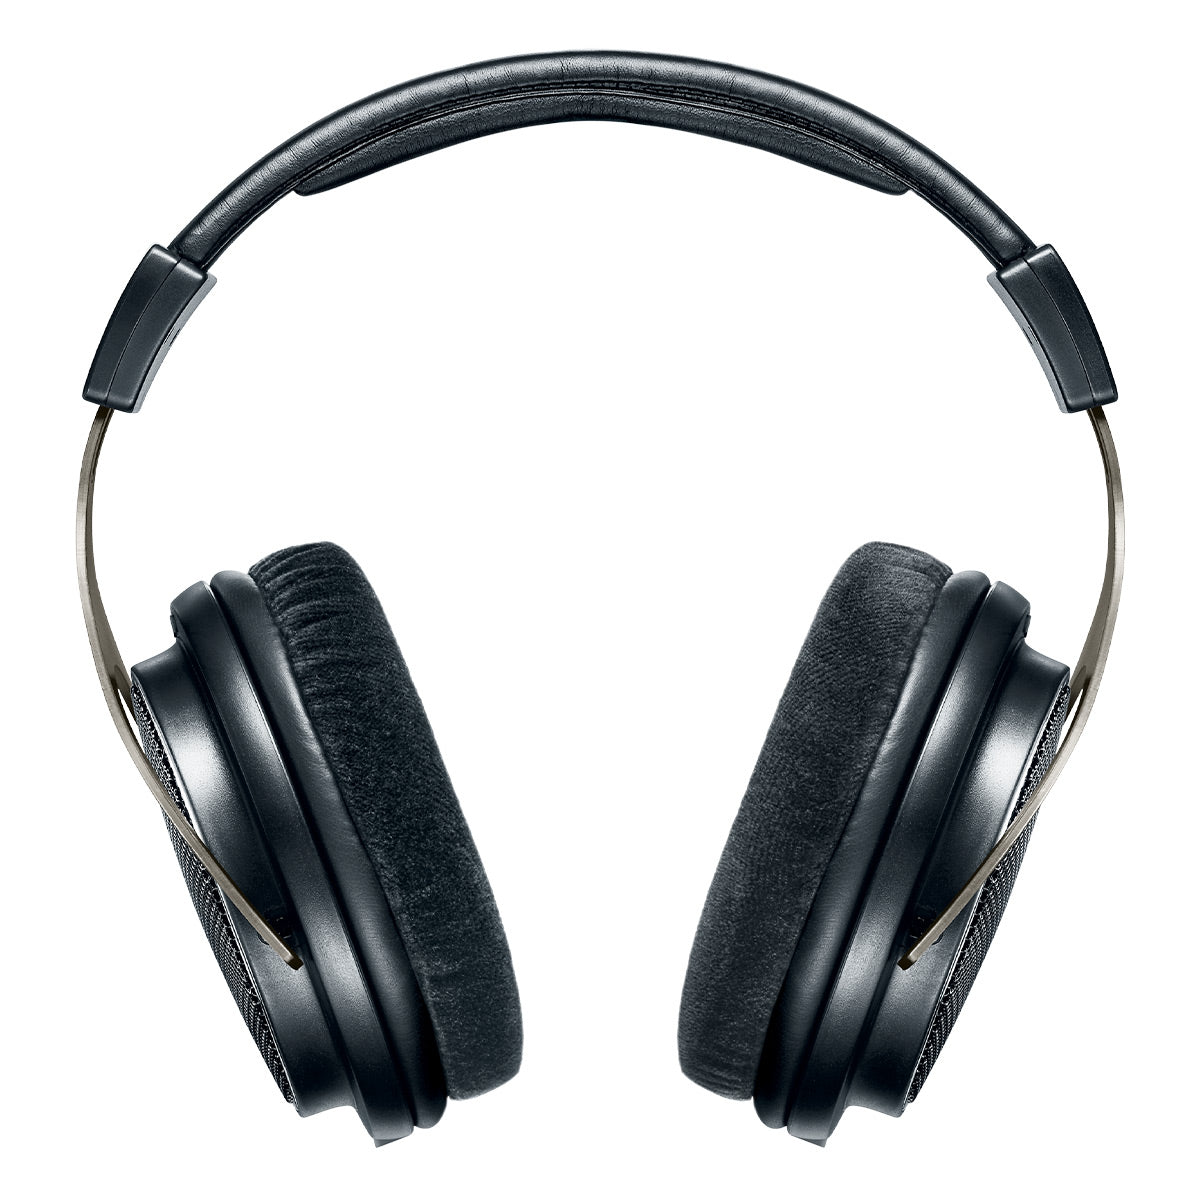 Shure SRH1840 Premium Open-Back Over-Ear Headphones